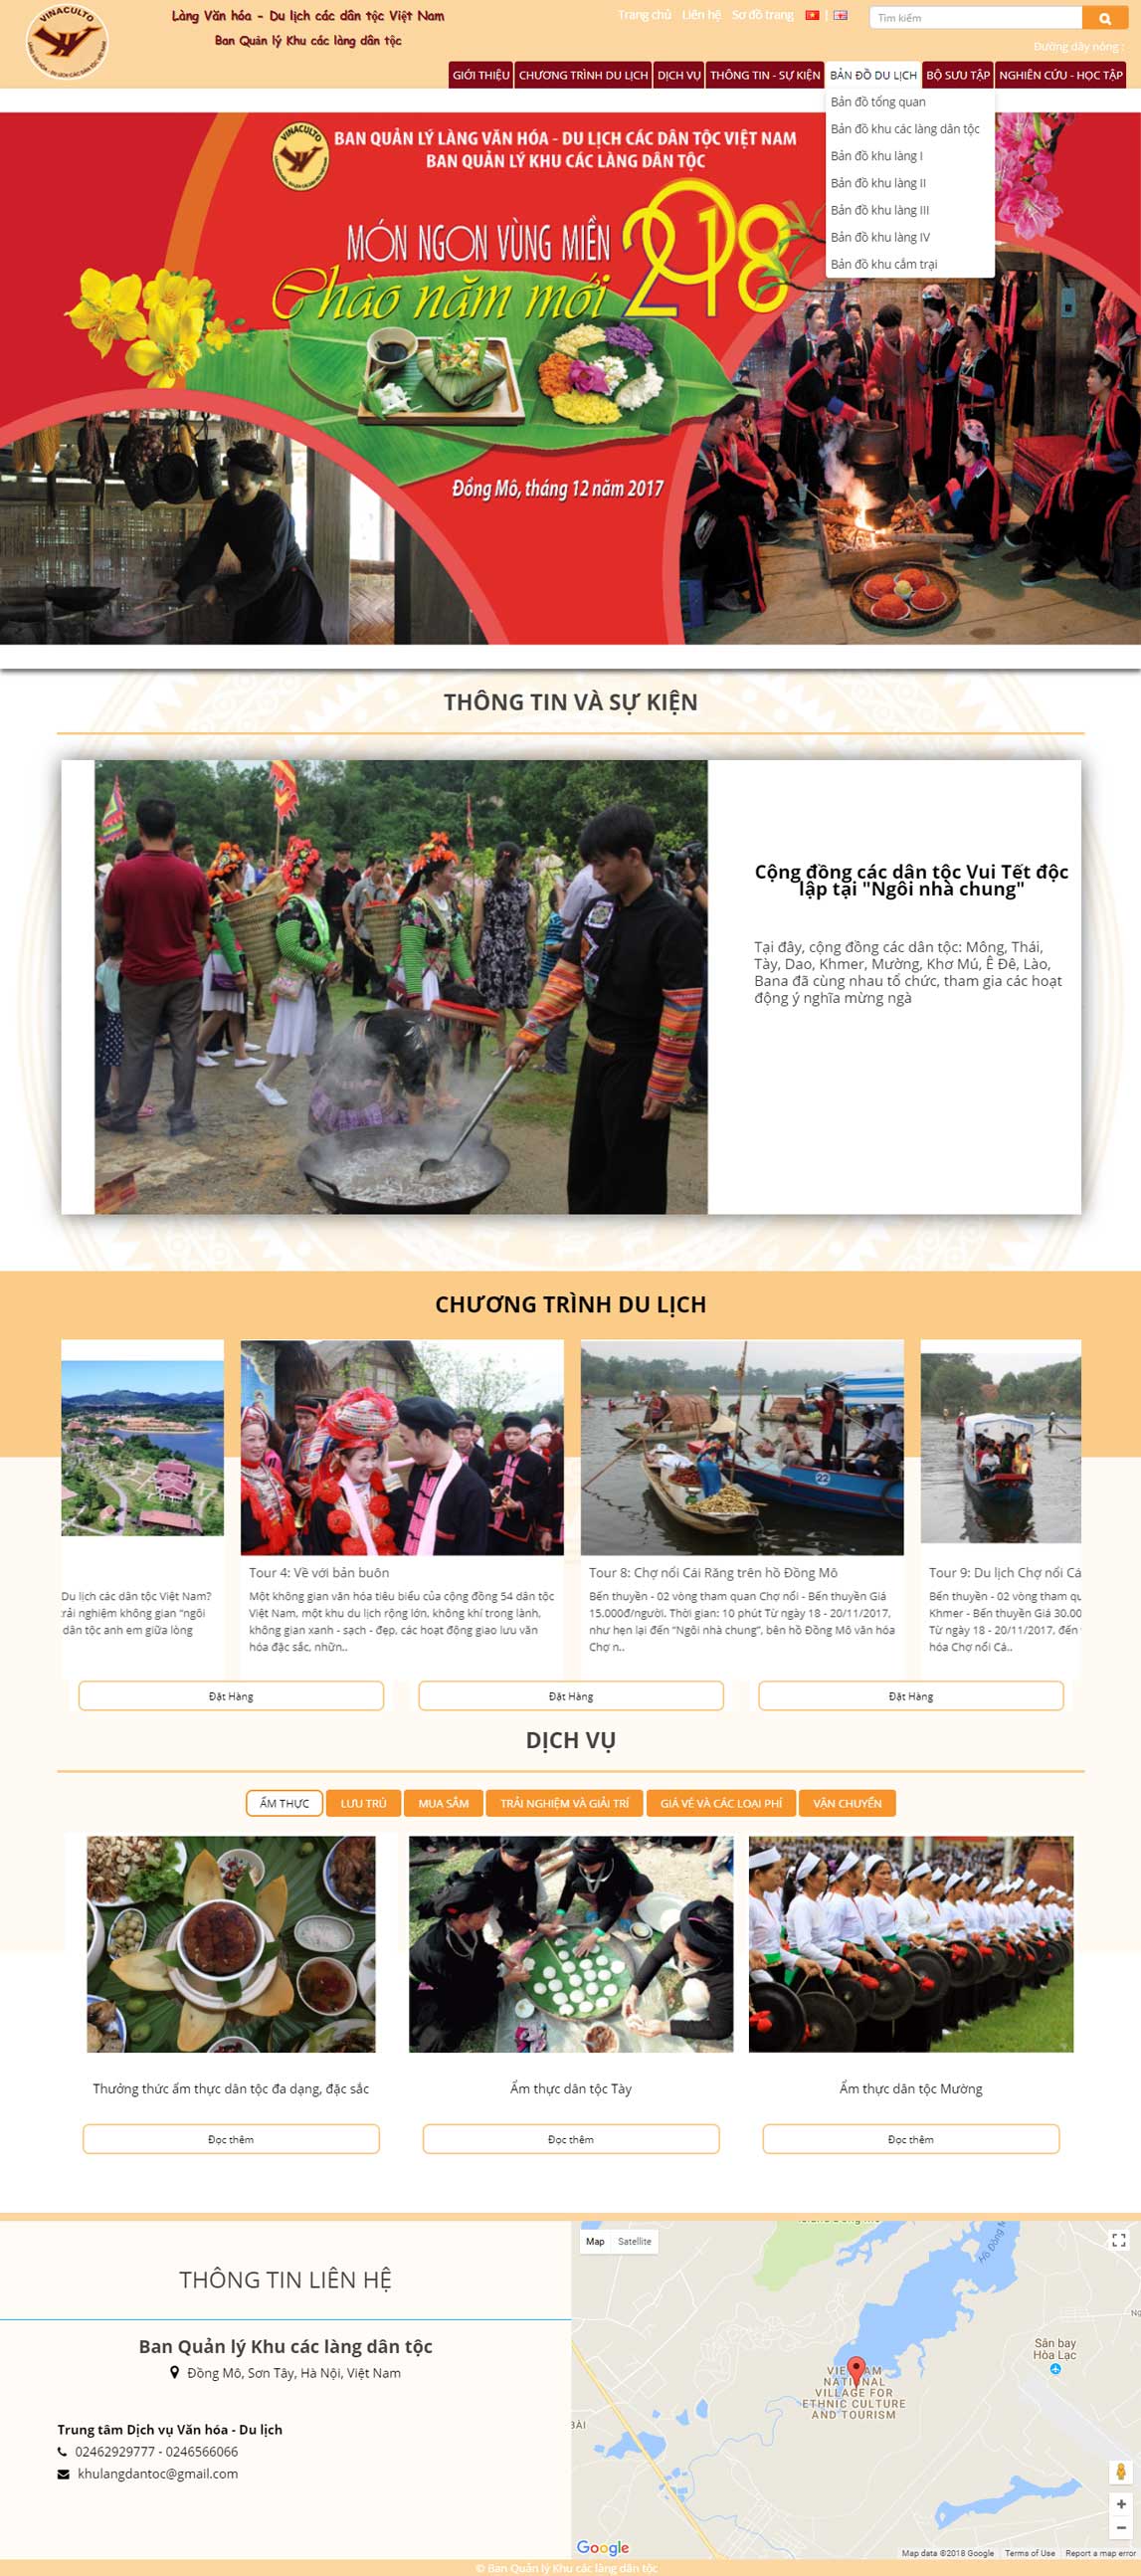 Giao diện website du lịch Làng văn hóa dân tộc Việt Nam